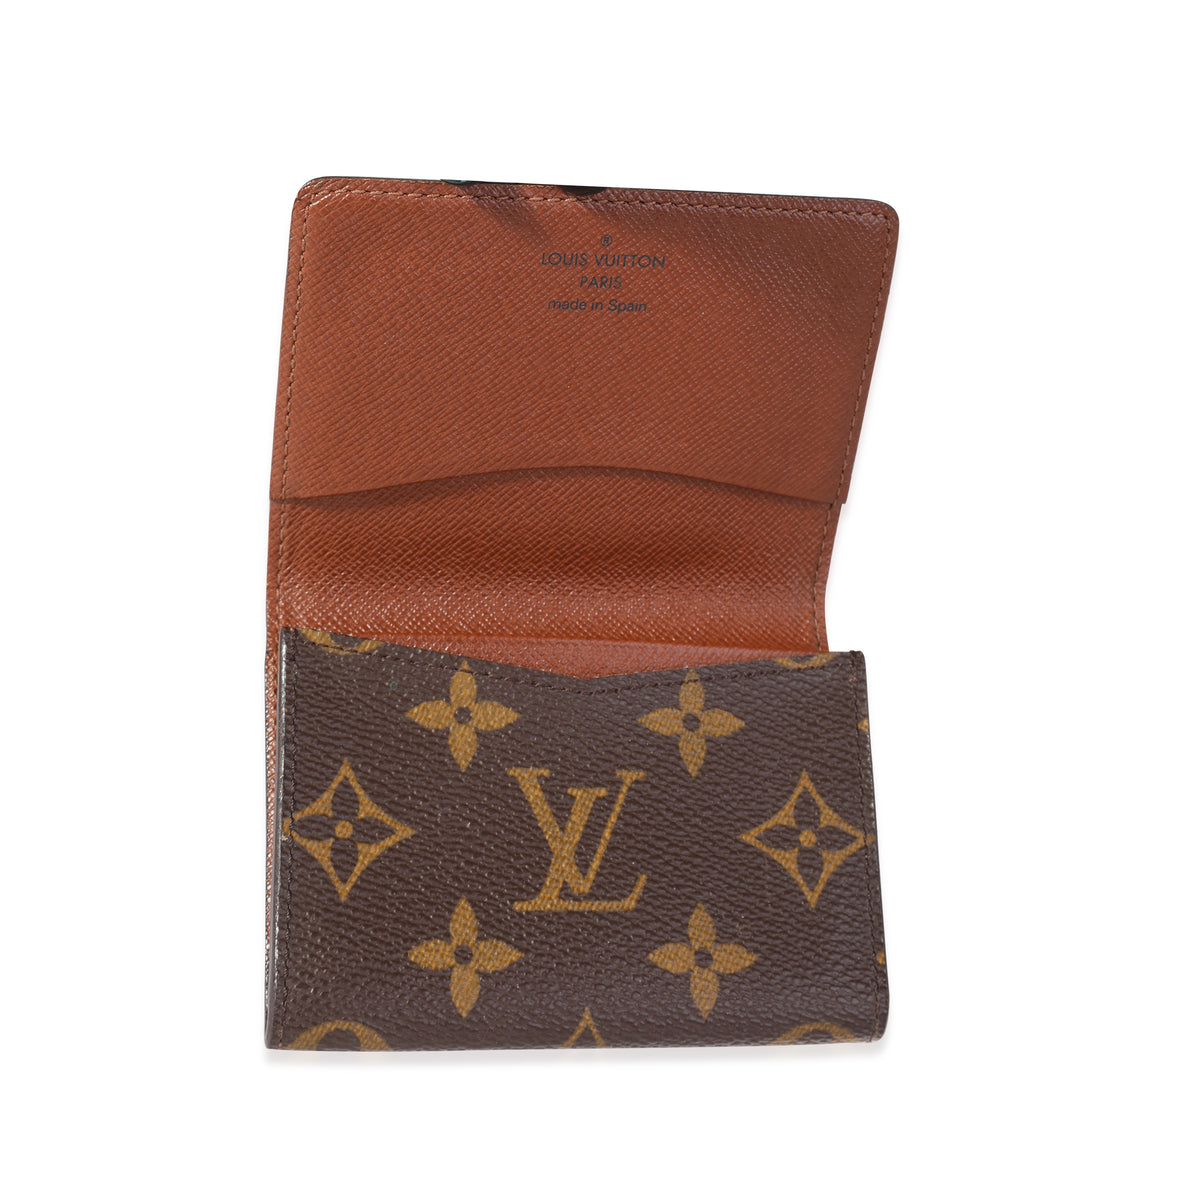 Louis Vuitton ENVELOPPE CARTE DE VISITE - M63801, Luxury, Bags